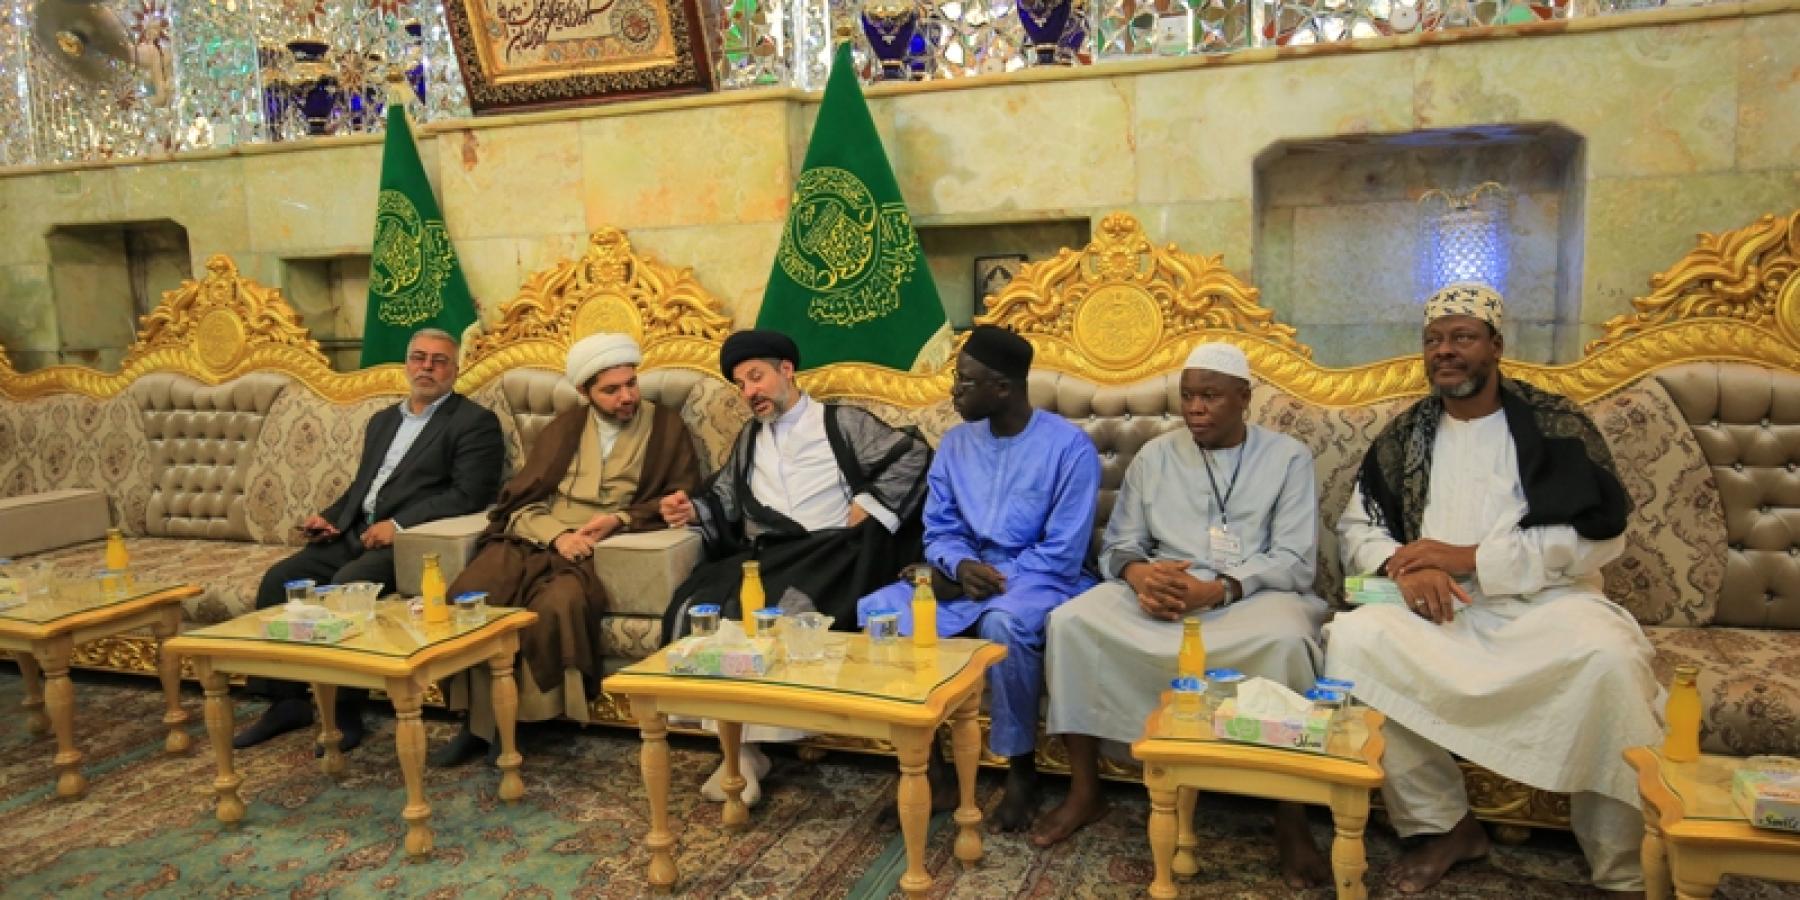 رئيس قسم الشؤون الدينية في العتبة العلوية يحتفي بشخصيات دينية وحكومية أفريقية تشرفت بزيارة العتبات المقدسة في العراق 